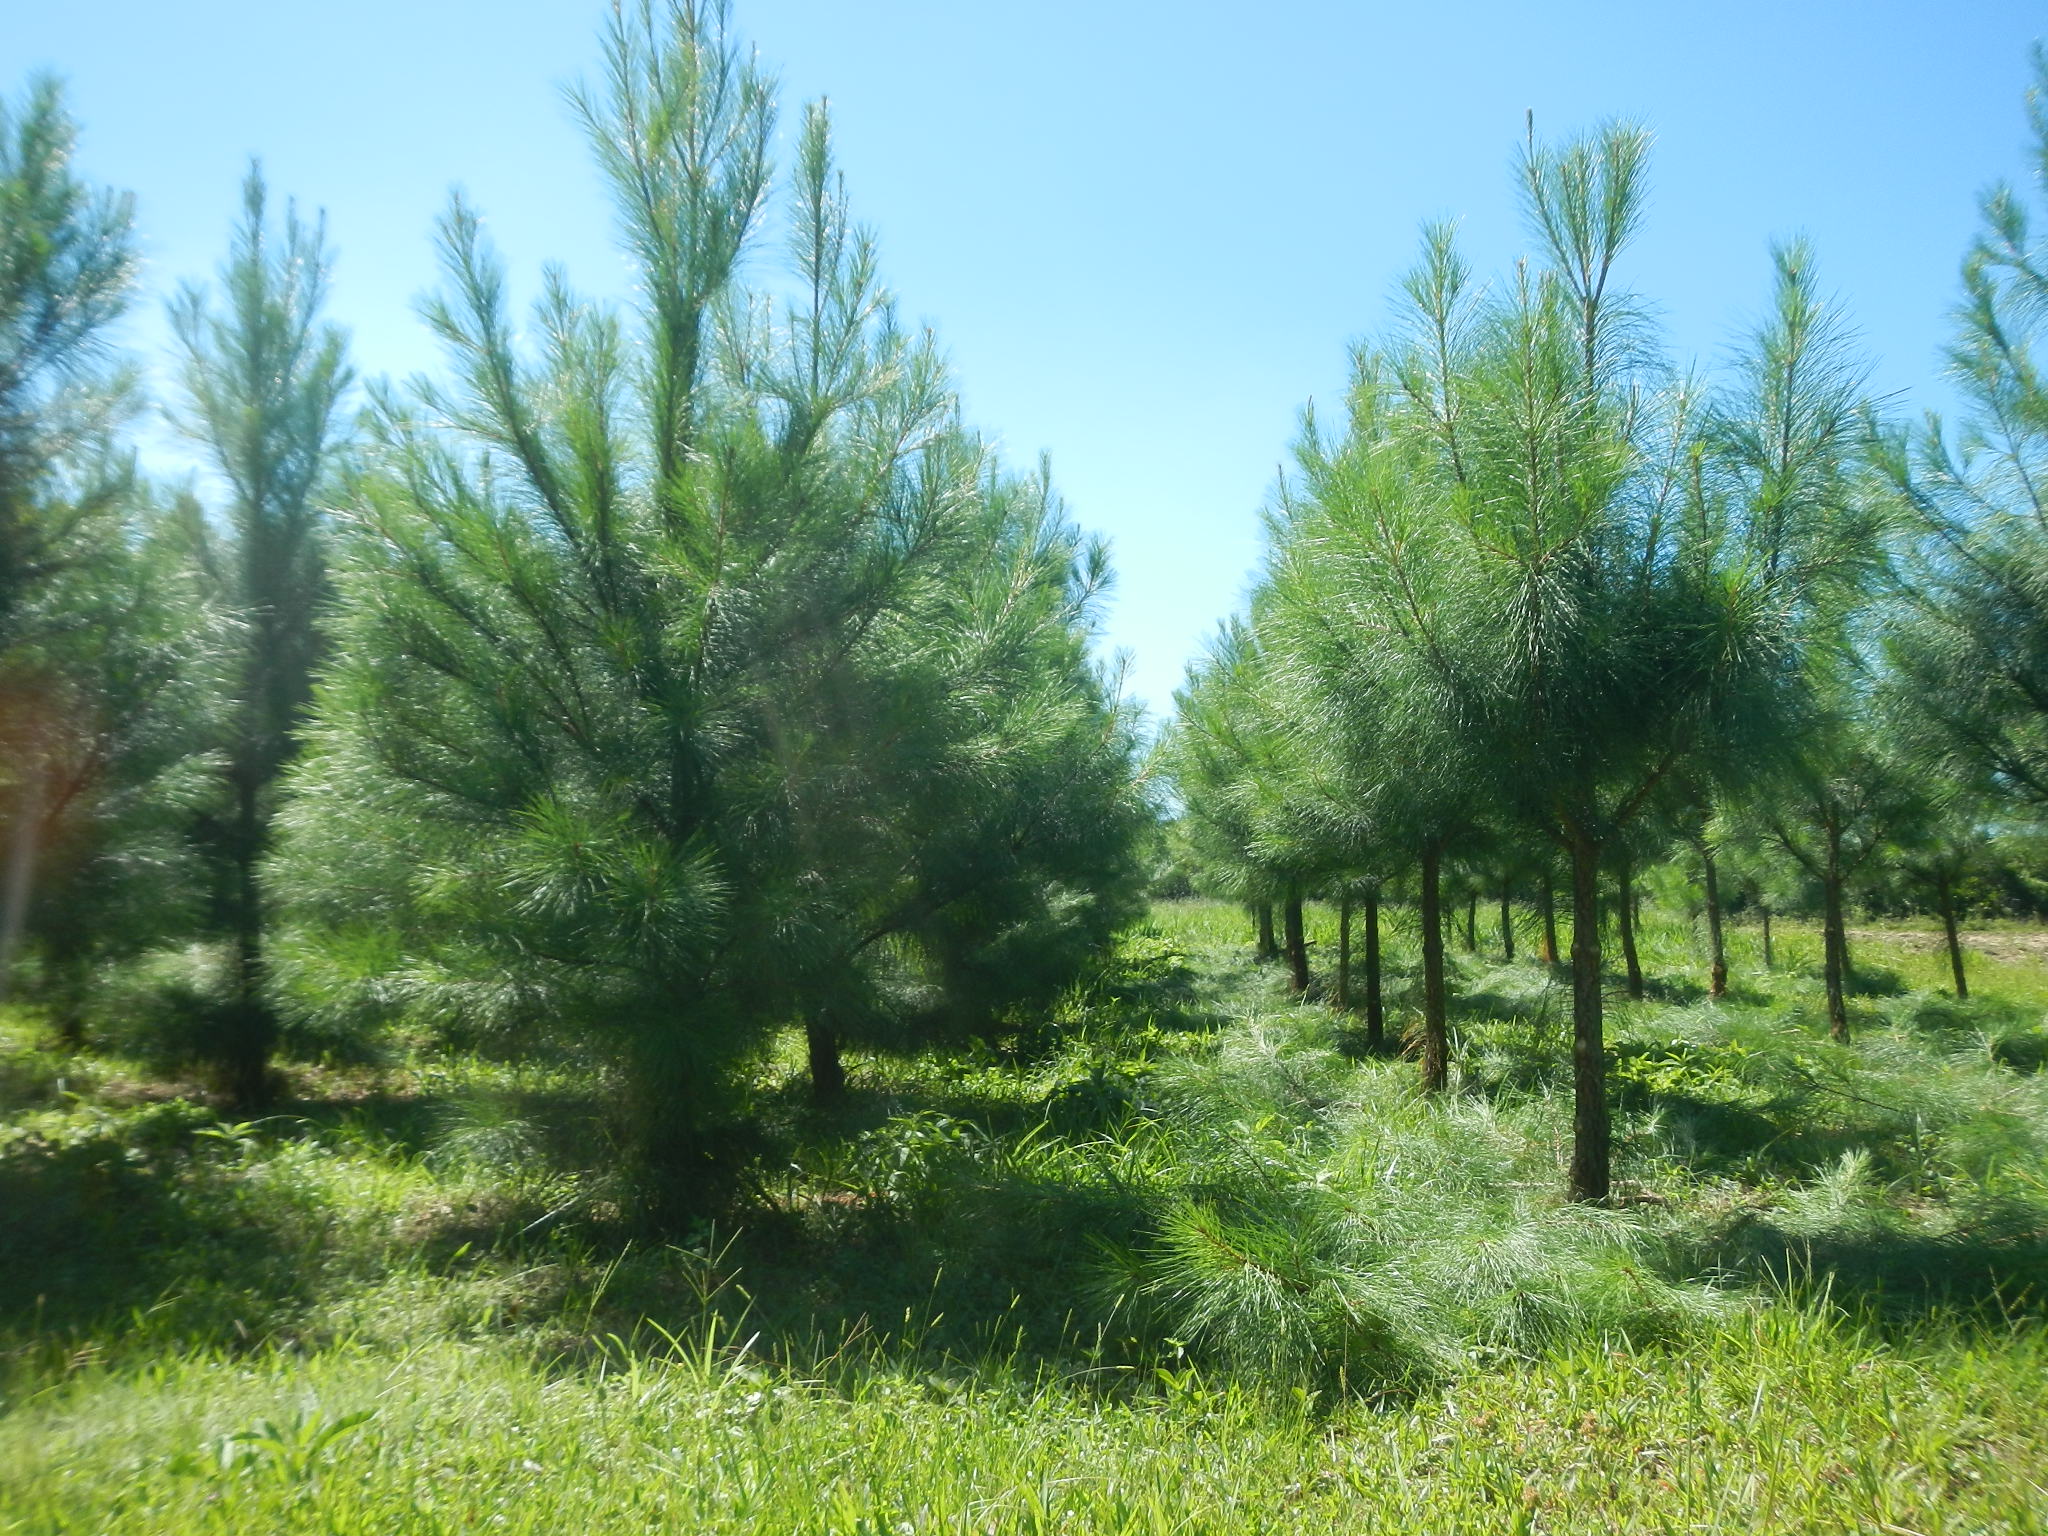 20150312 Fazenda Silvicultura poda desrama de pinus 003.jpg